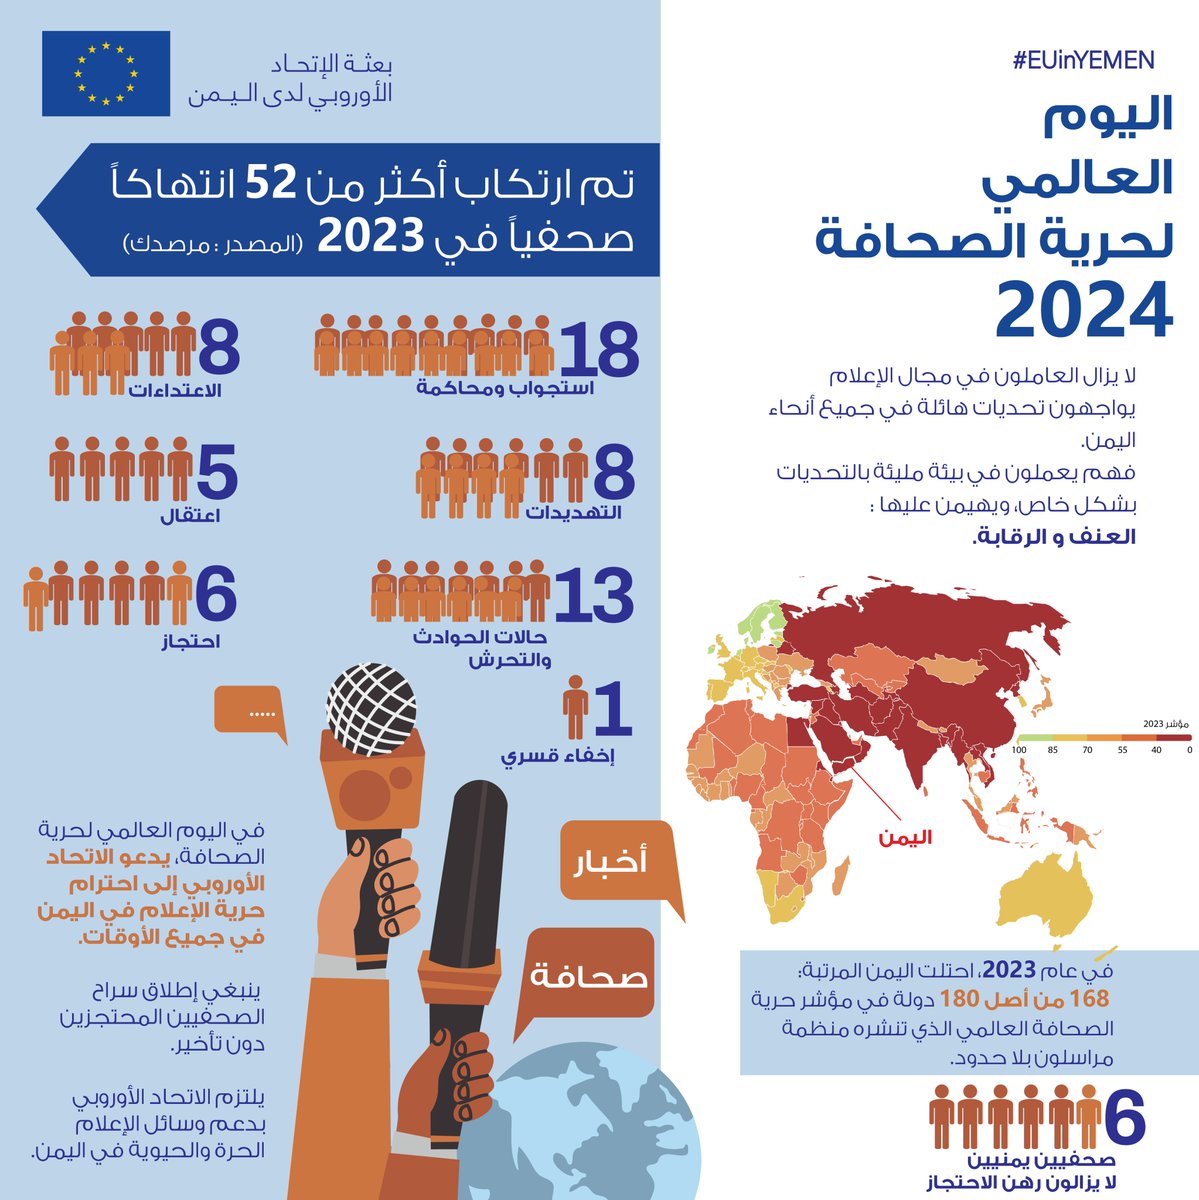 في #اليوم_العالمي_لحرية_الصحافة، يدعو الاتحاد الأوروبي 🇪🇺 إلى احترام حرية الإعلام في اليمن في جميع الأوقات. ينبغي إطلاق سراح الصحفيين المحتجزين دون تأخير. يلتزم الاتحاد الأوروبي بدعم إعلام حر وحيوي في #اليمن.